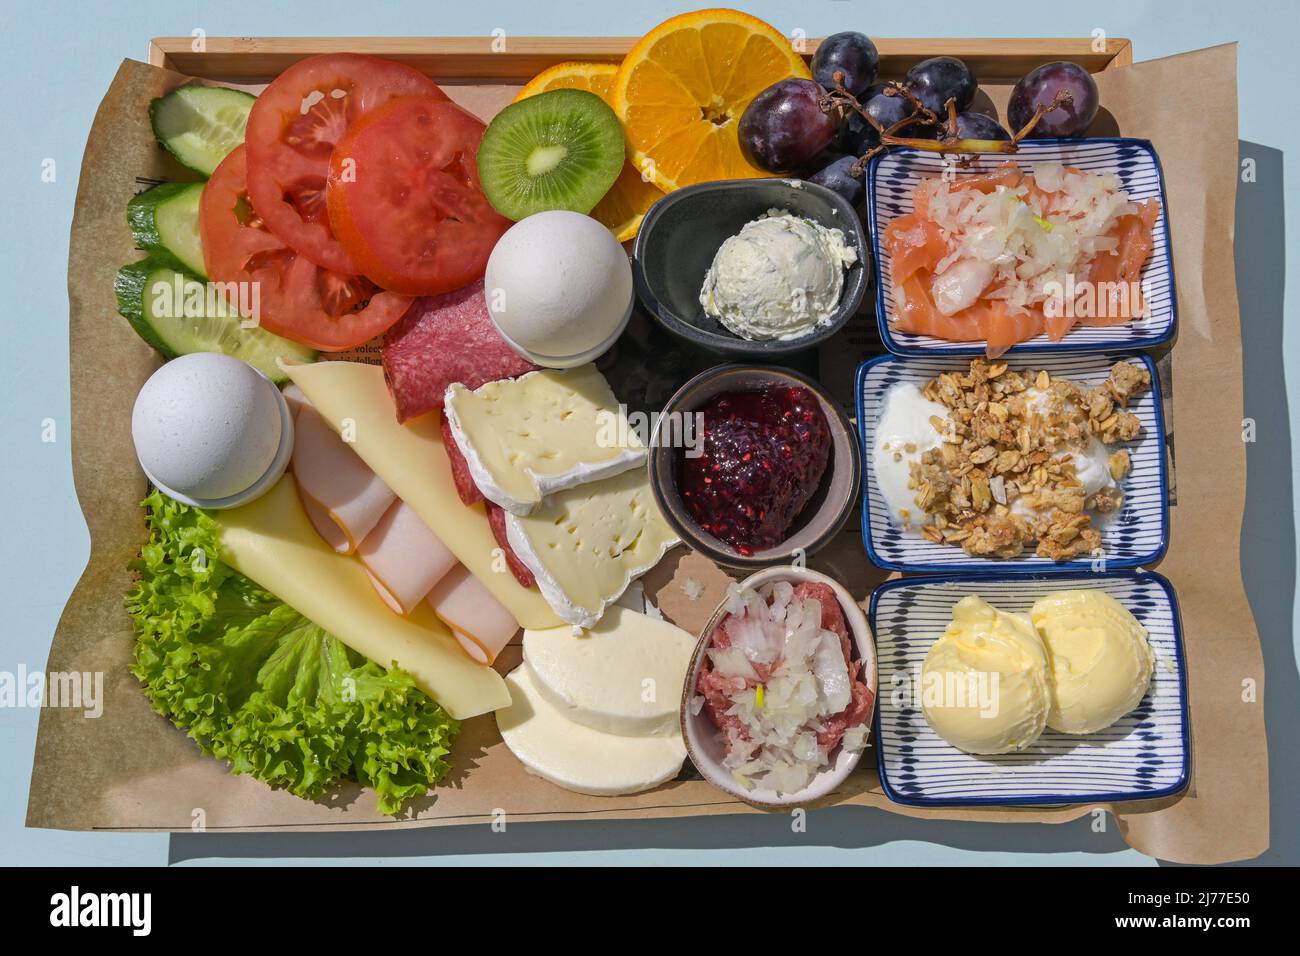 Desayuno o almuerzo variado para dos en una bandeja con embutidos, queso, huevos hervidos, fruta y más, vista de la parte superior desde arriba Foto de stock